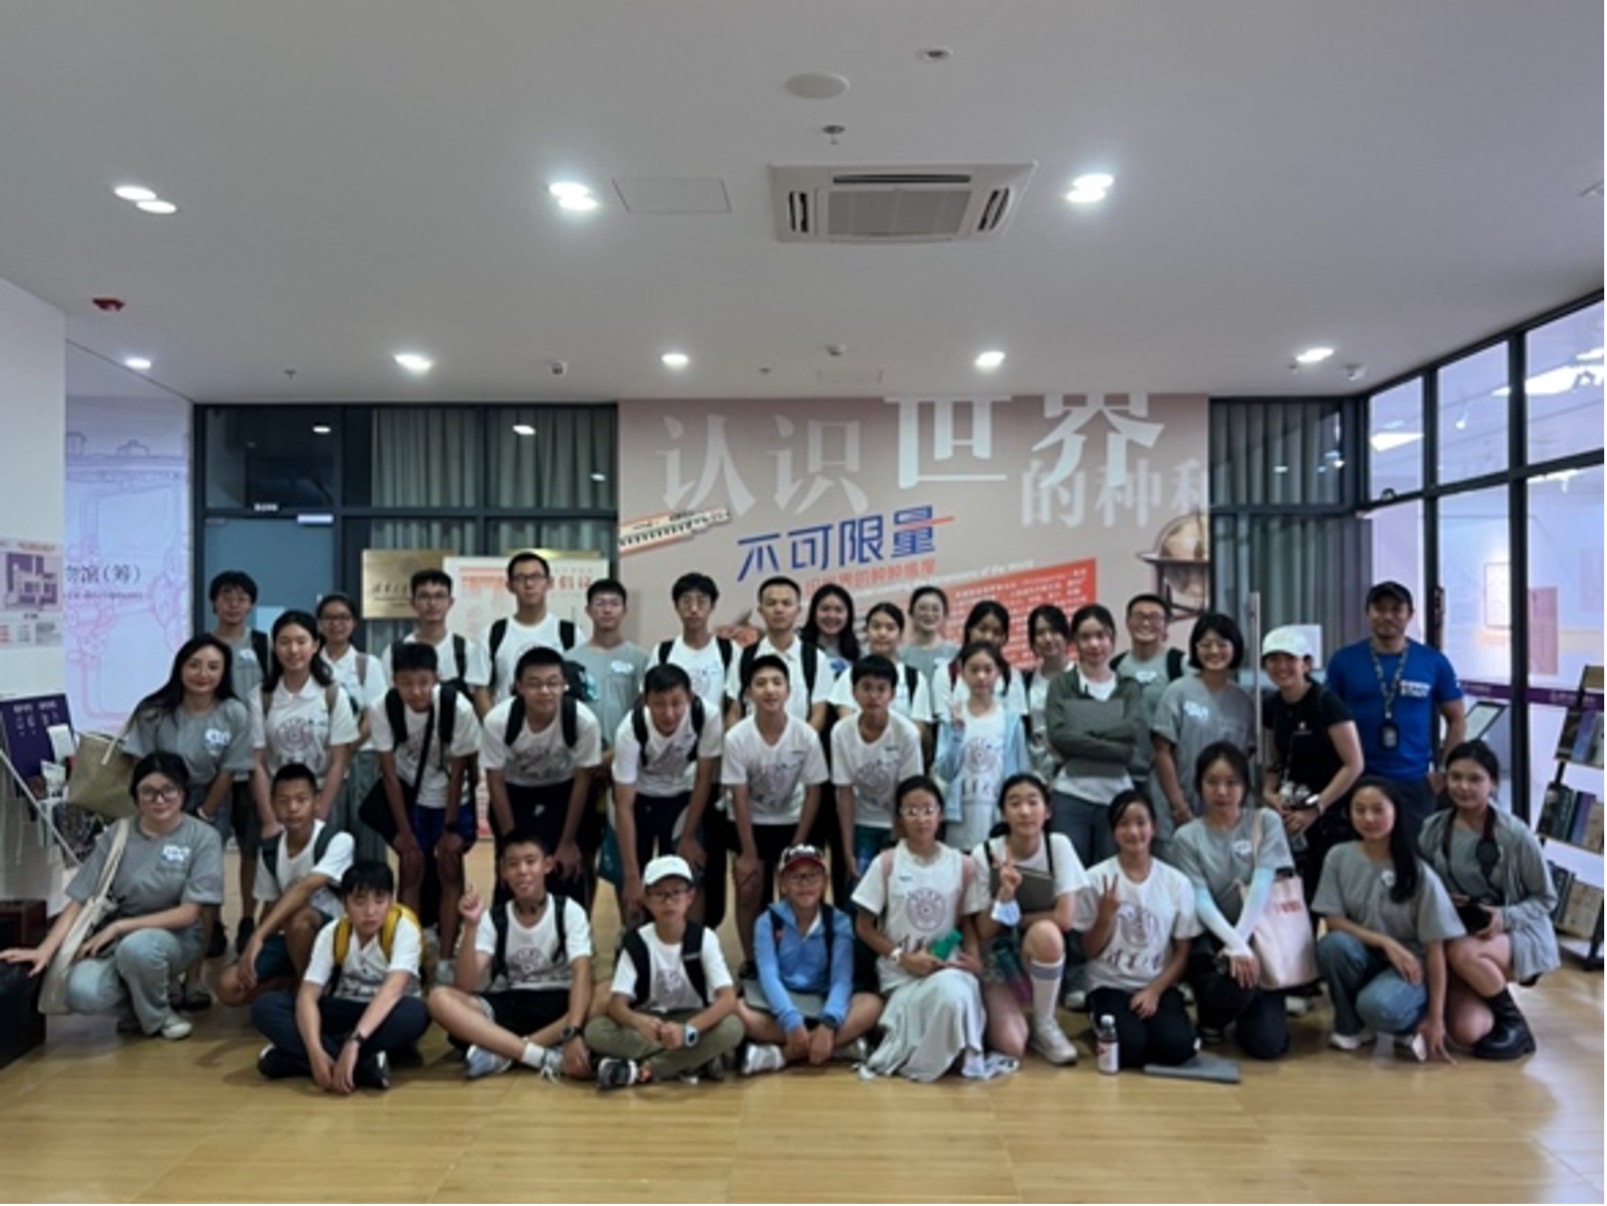 清华大学科学博物馆暑期开展多场面向青少年学子的科普研学活动